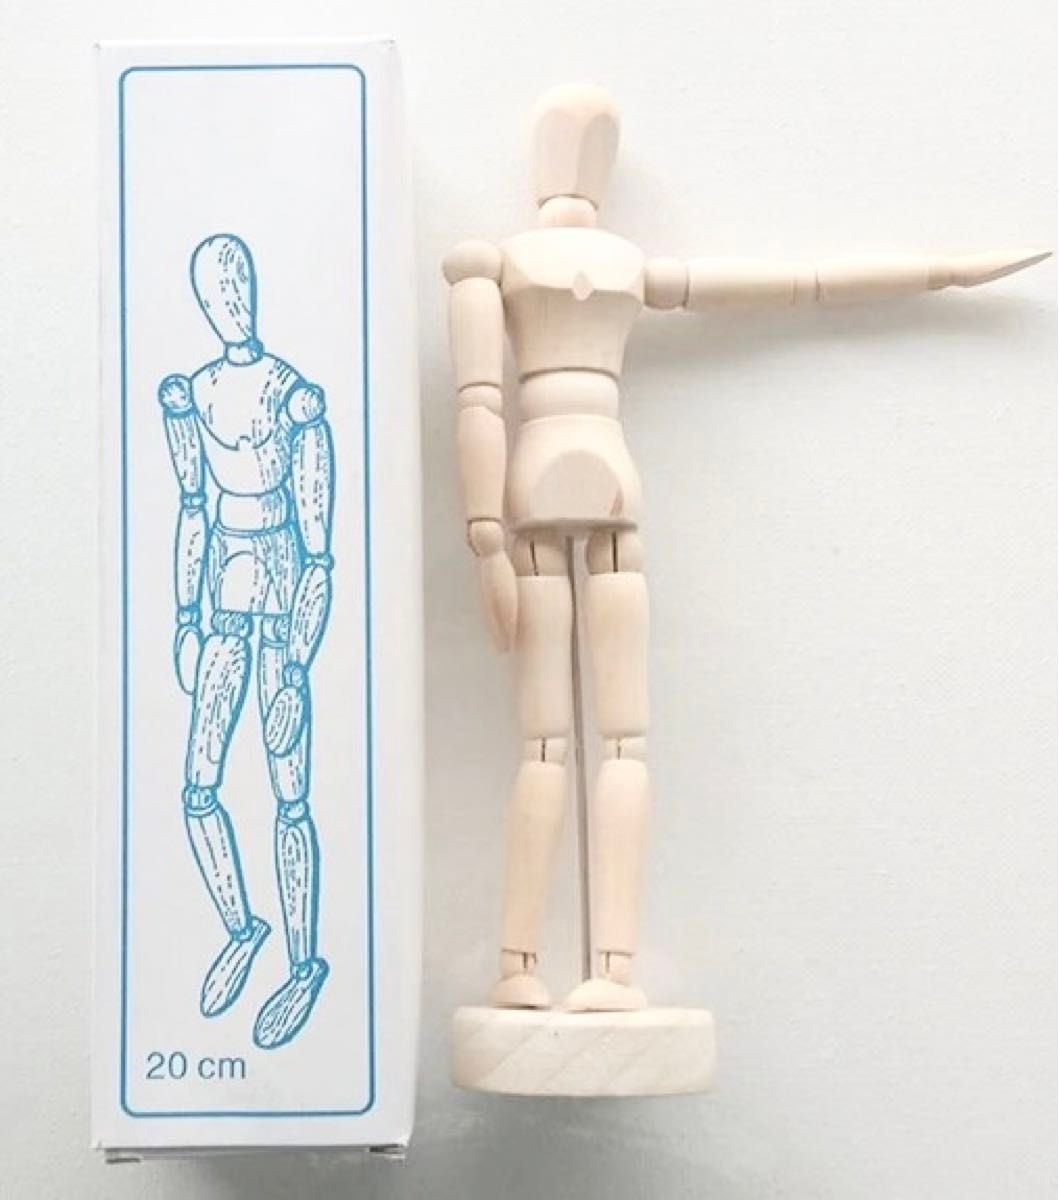 デッサン木製 モデル 可動式 漫画模型 マネキン 関節人形 素体 デッサン用 人形 フィギュア 美術 ドール 木の人形 絵 置物